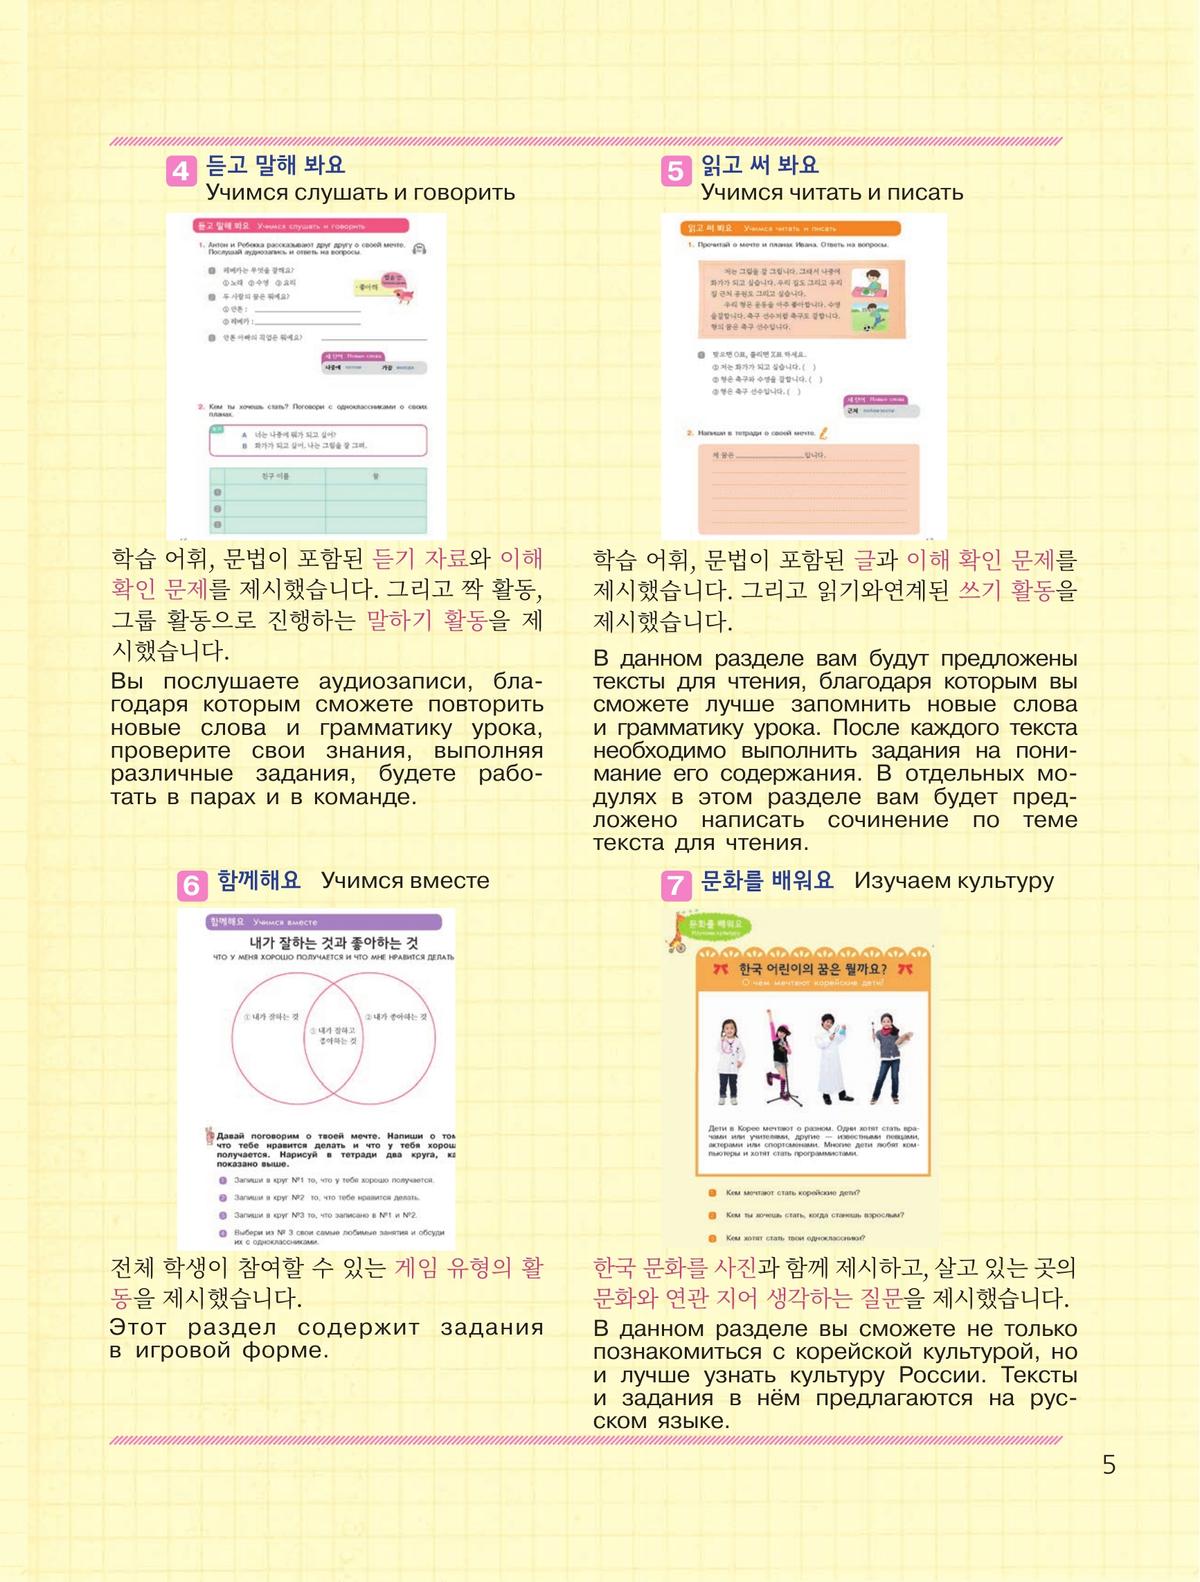 Корейский язык. Второй иностранный язык. 7 класс. Учебное пособие 8